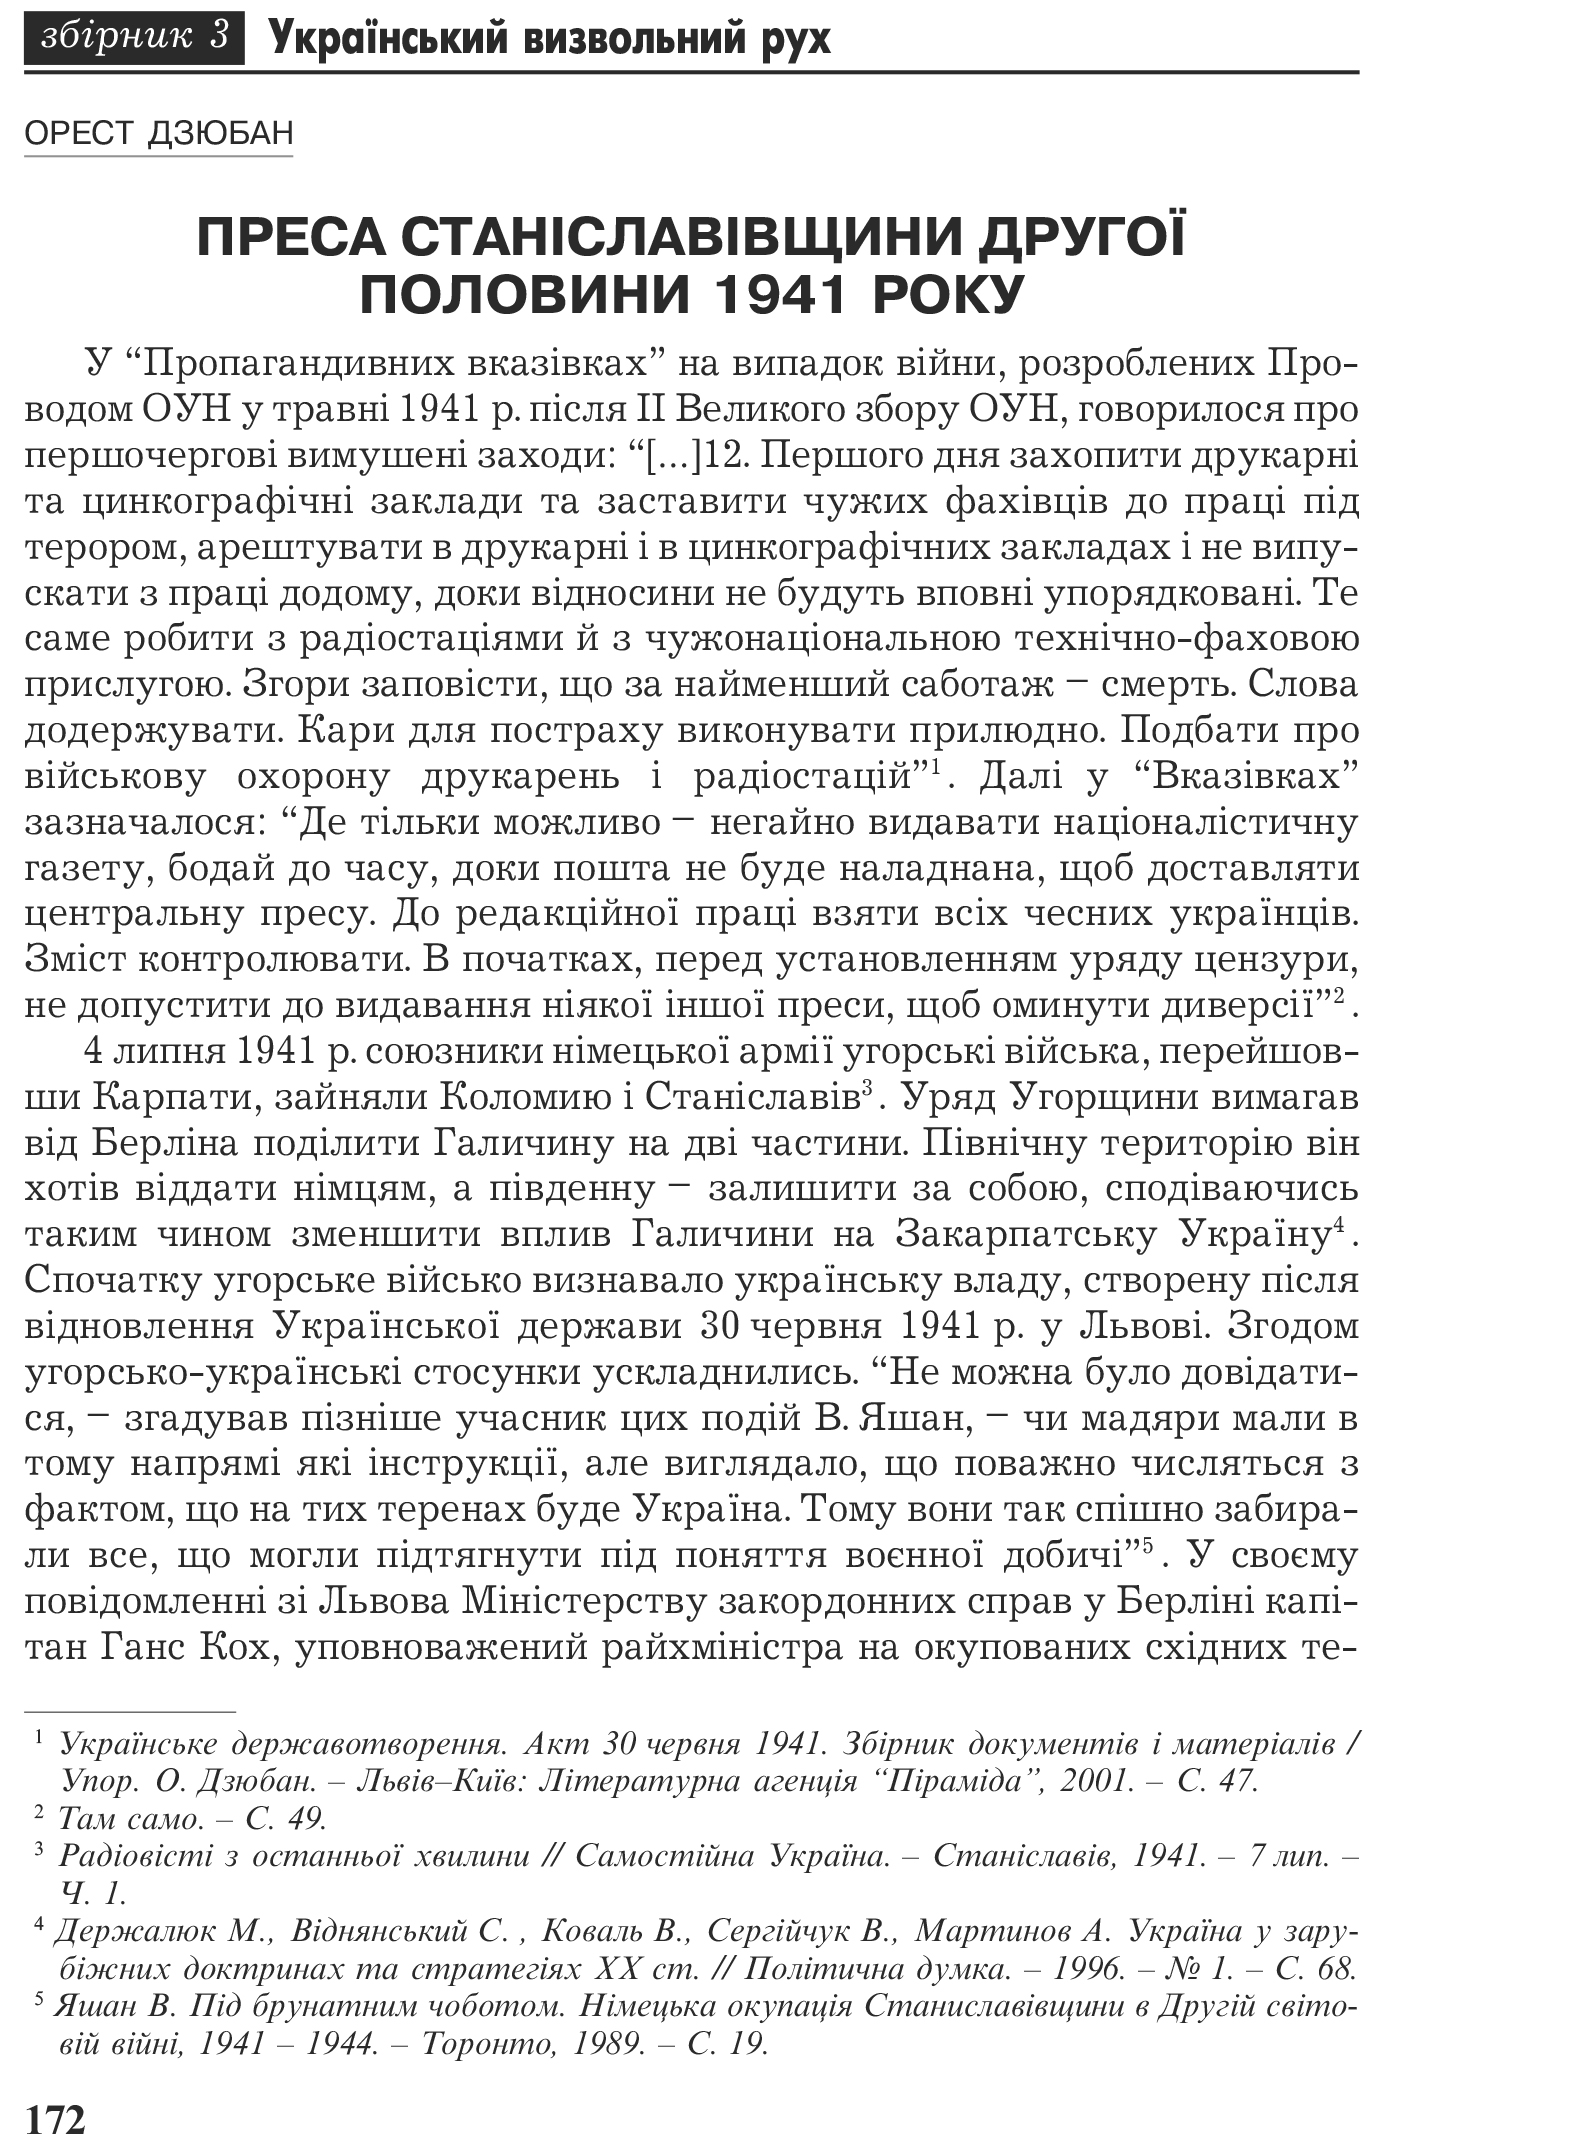 Український визвольний рух №3, ст. 172 - 195